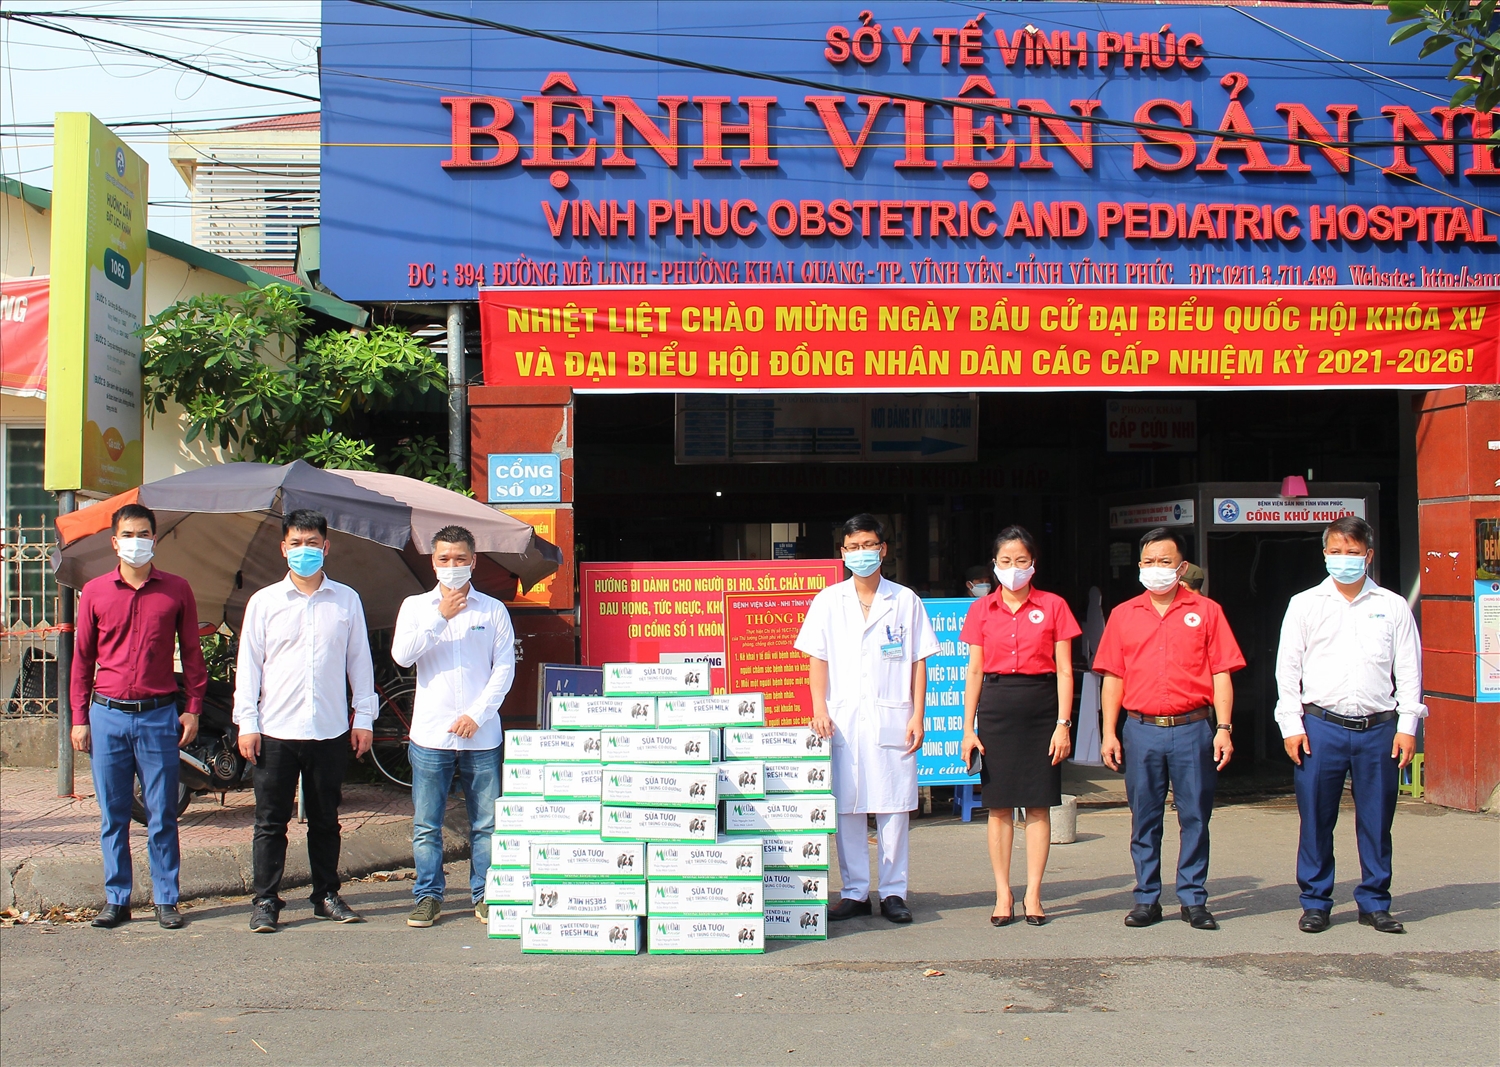 Mộc Châu Milk đã chuyển các sản phẩm đến các bệnh viện, điểm trường học đang cách ly cần hỗ trợ trên địa bàn tỉnh Vĩnh Phúc và Bắc Giang ngay trong ngày